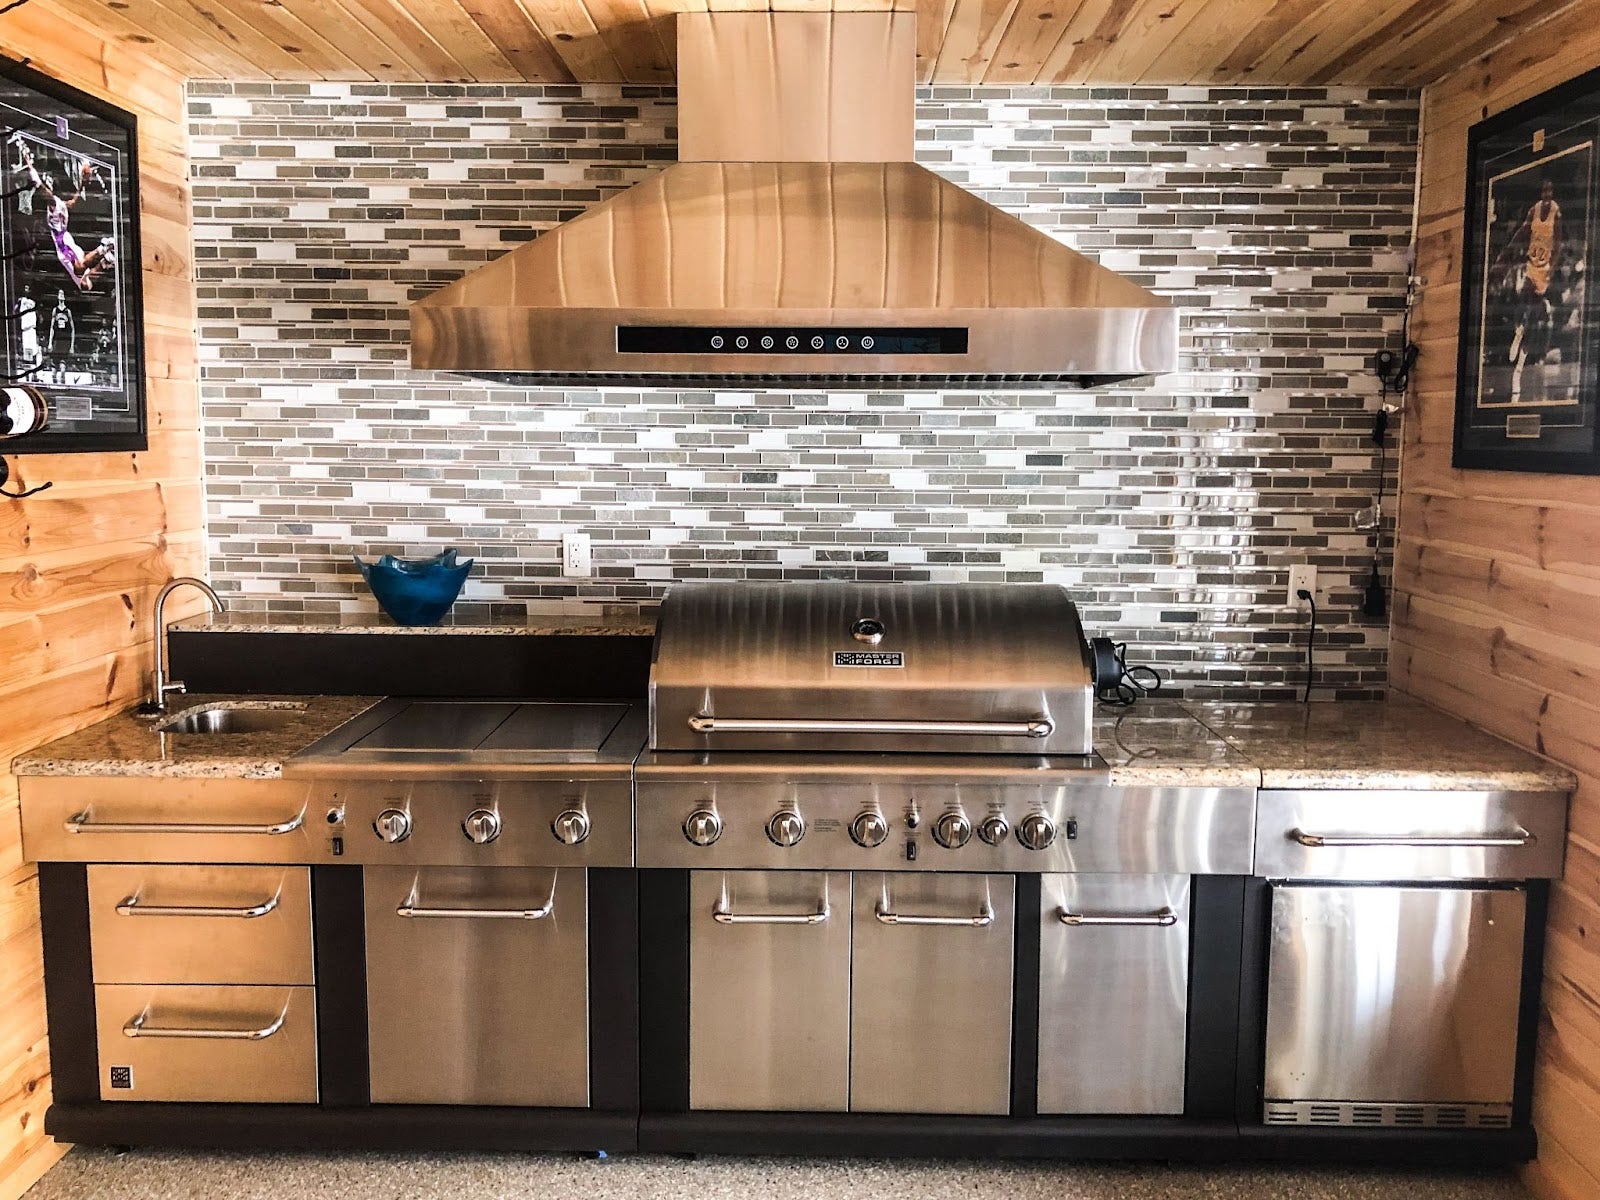 Cozy cabin outdoor cooking space featuring a Proline range hood, large stainless steel grilling station, and elegant backsplash design - prolinerangehoods.com